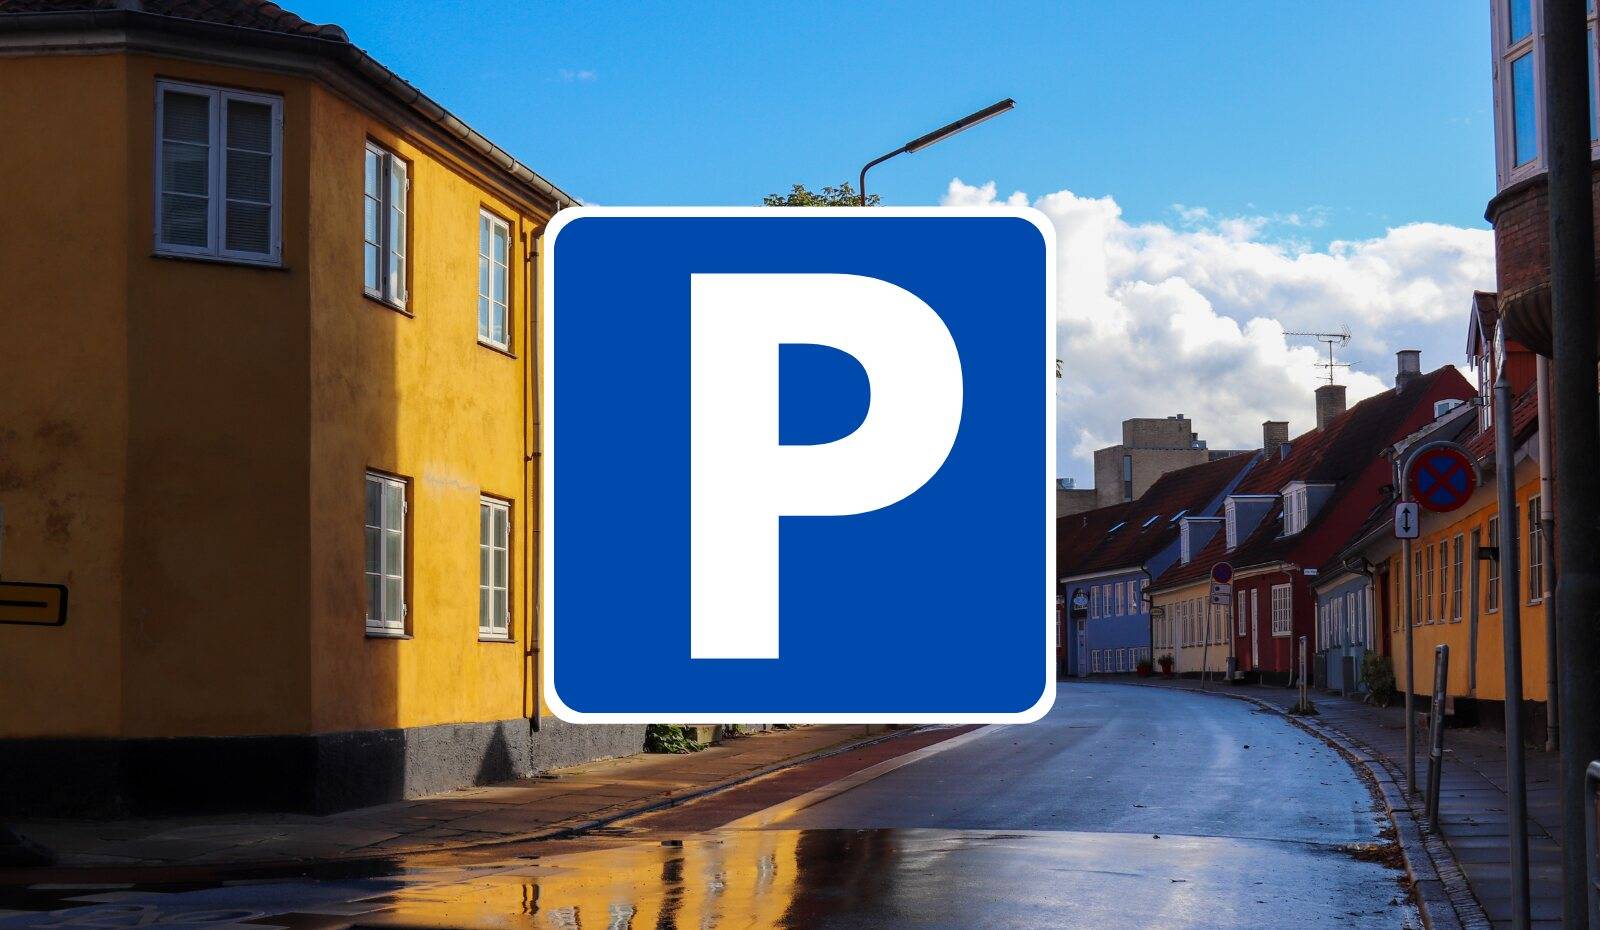 Copark parkeringsselskab - bliv klogere på parkering 